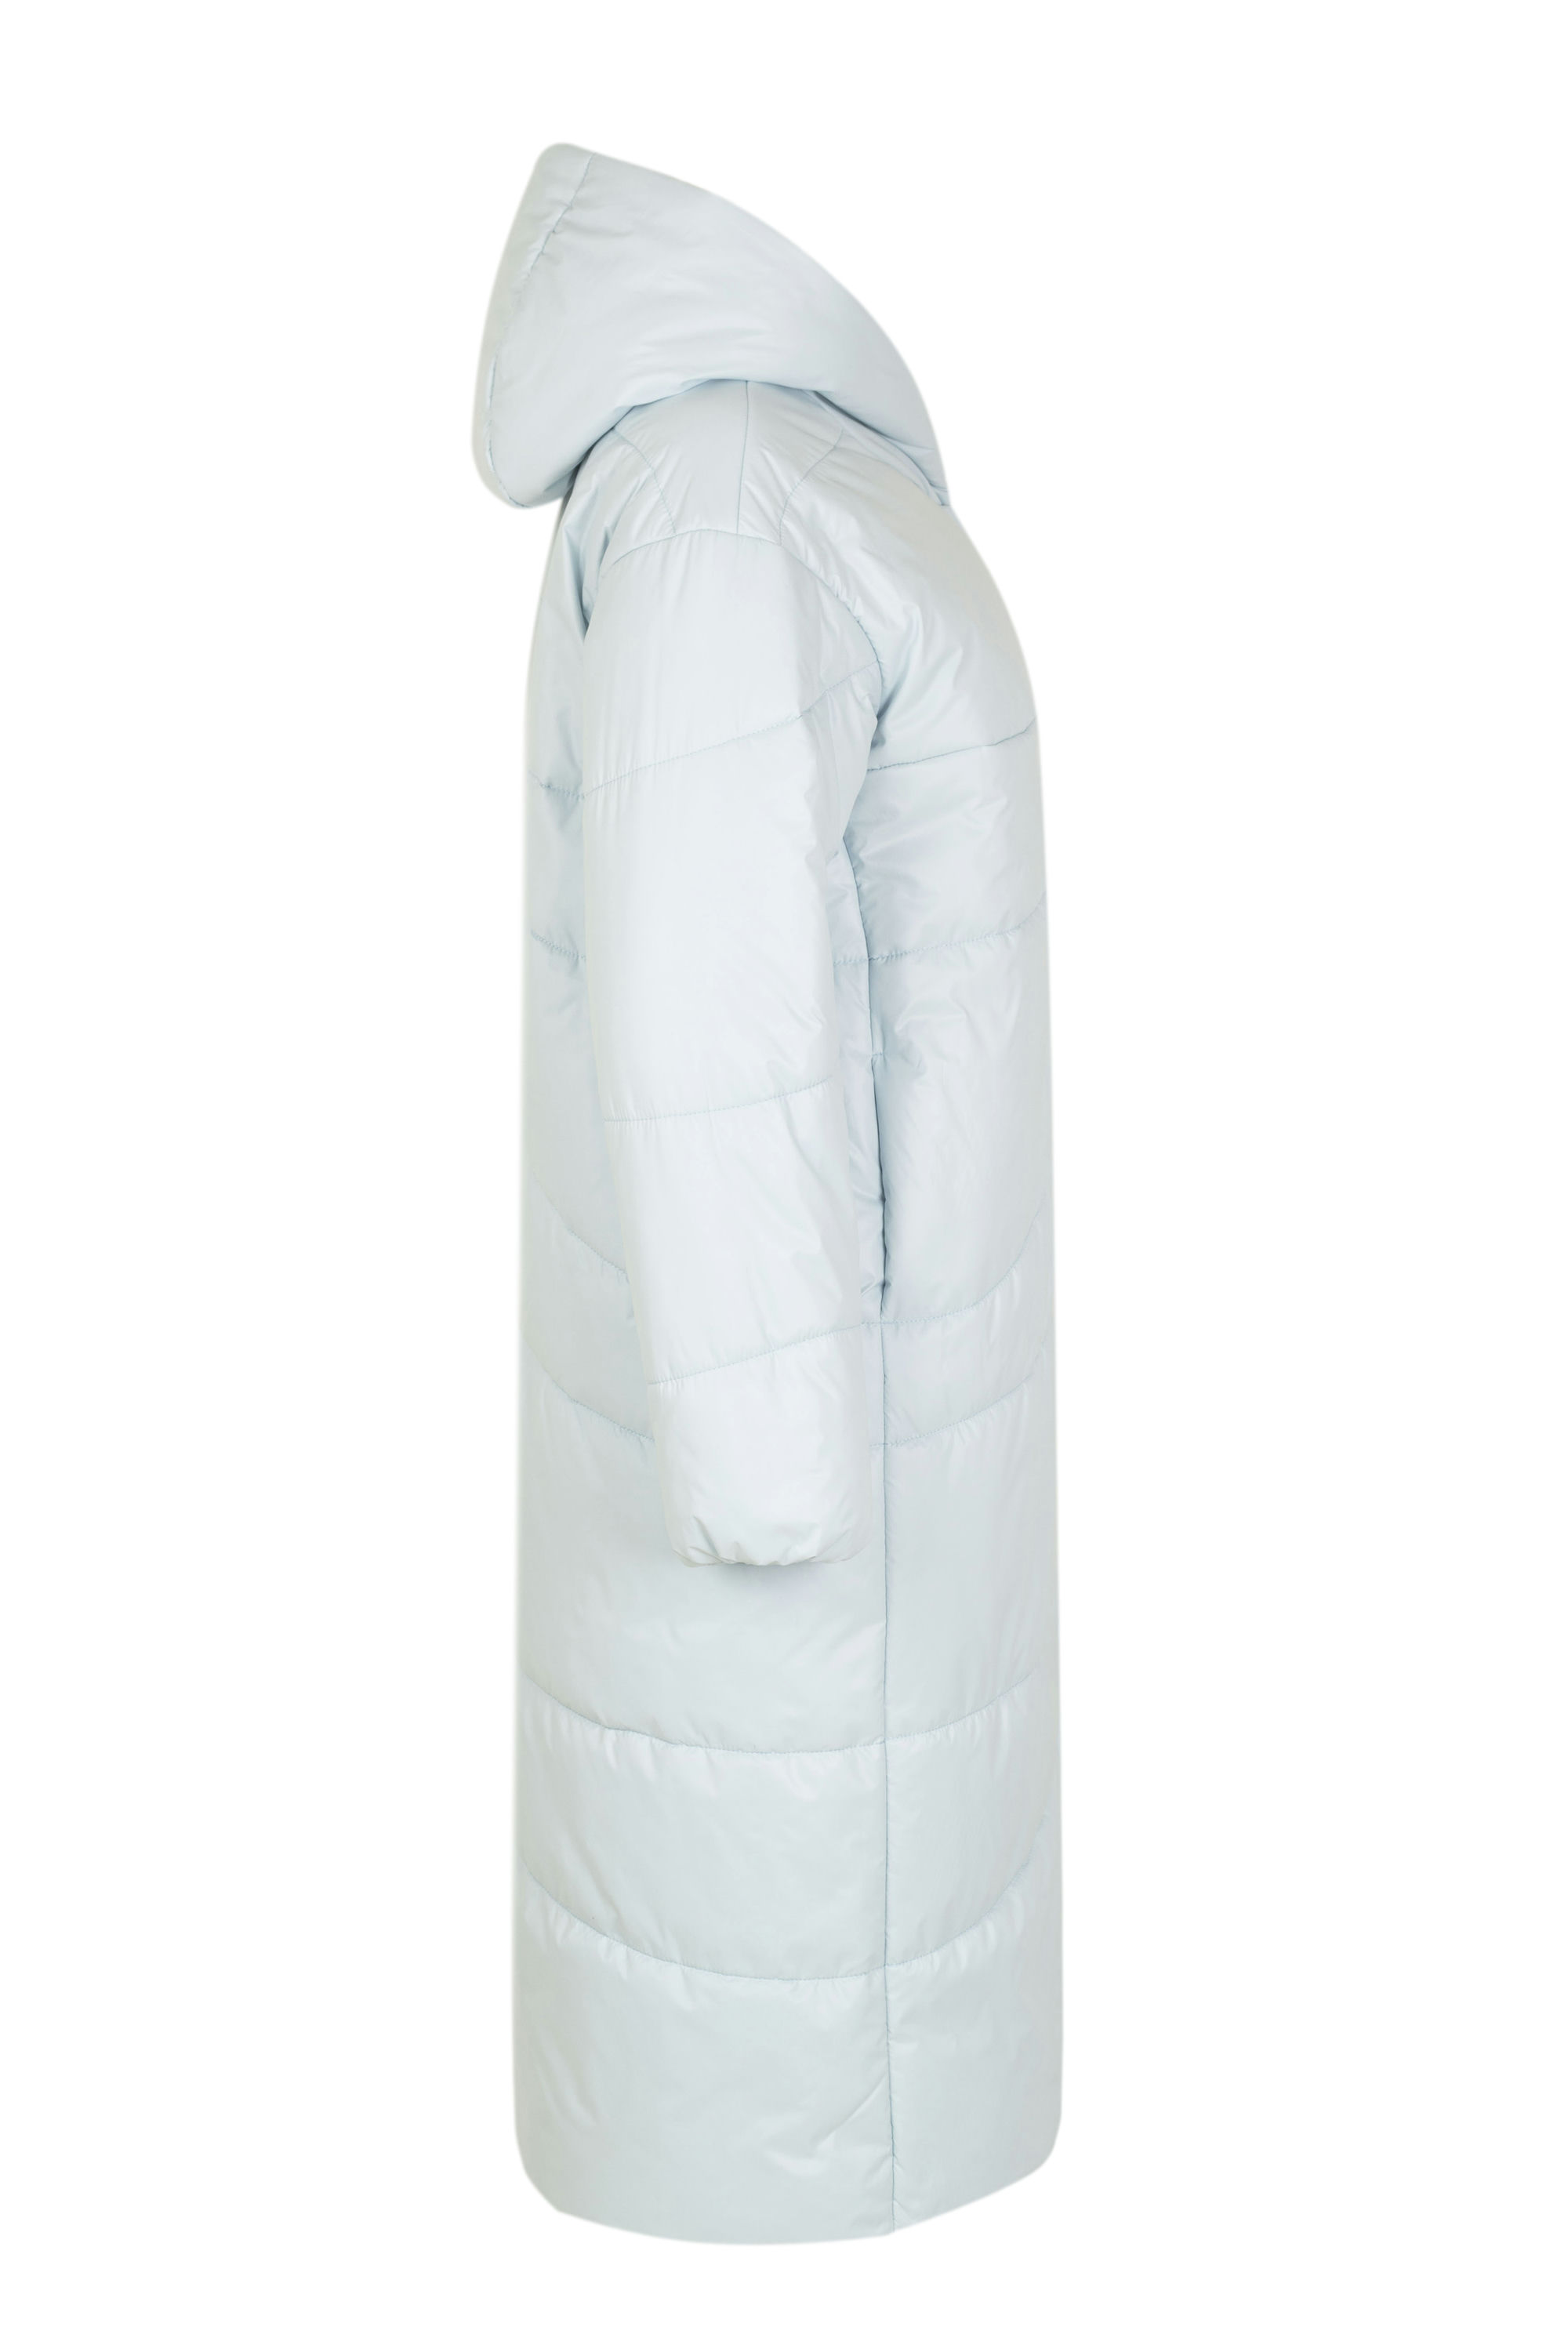 Пальто женское плащевое утепленное 5-153